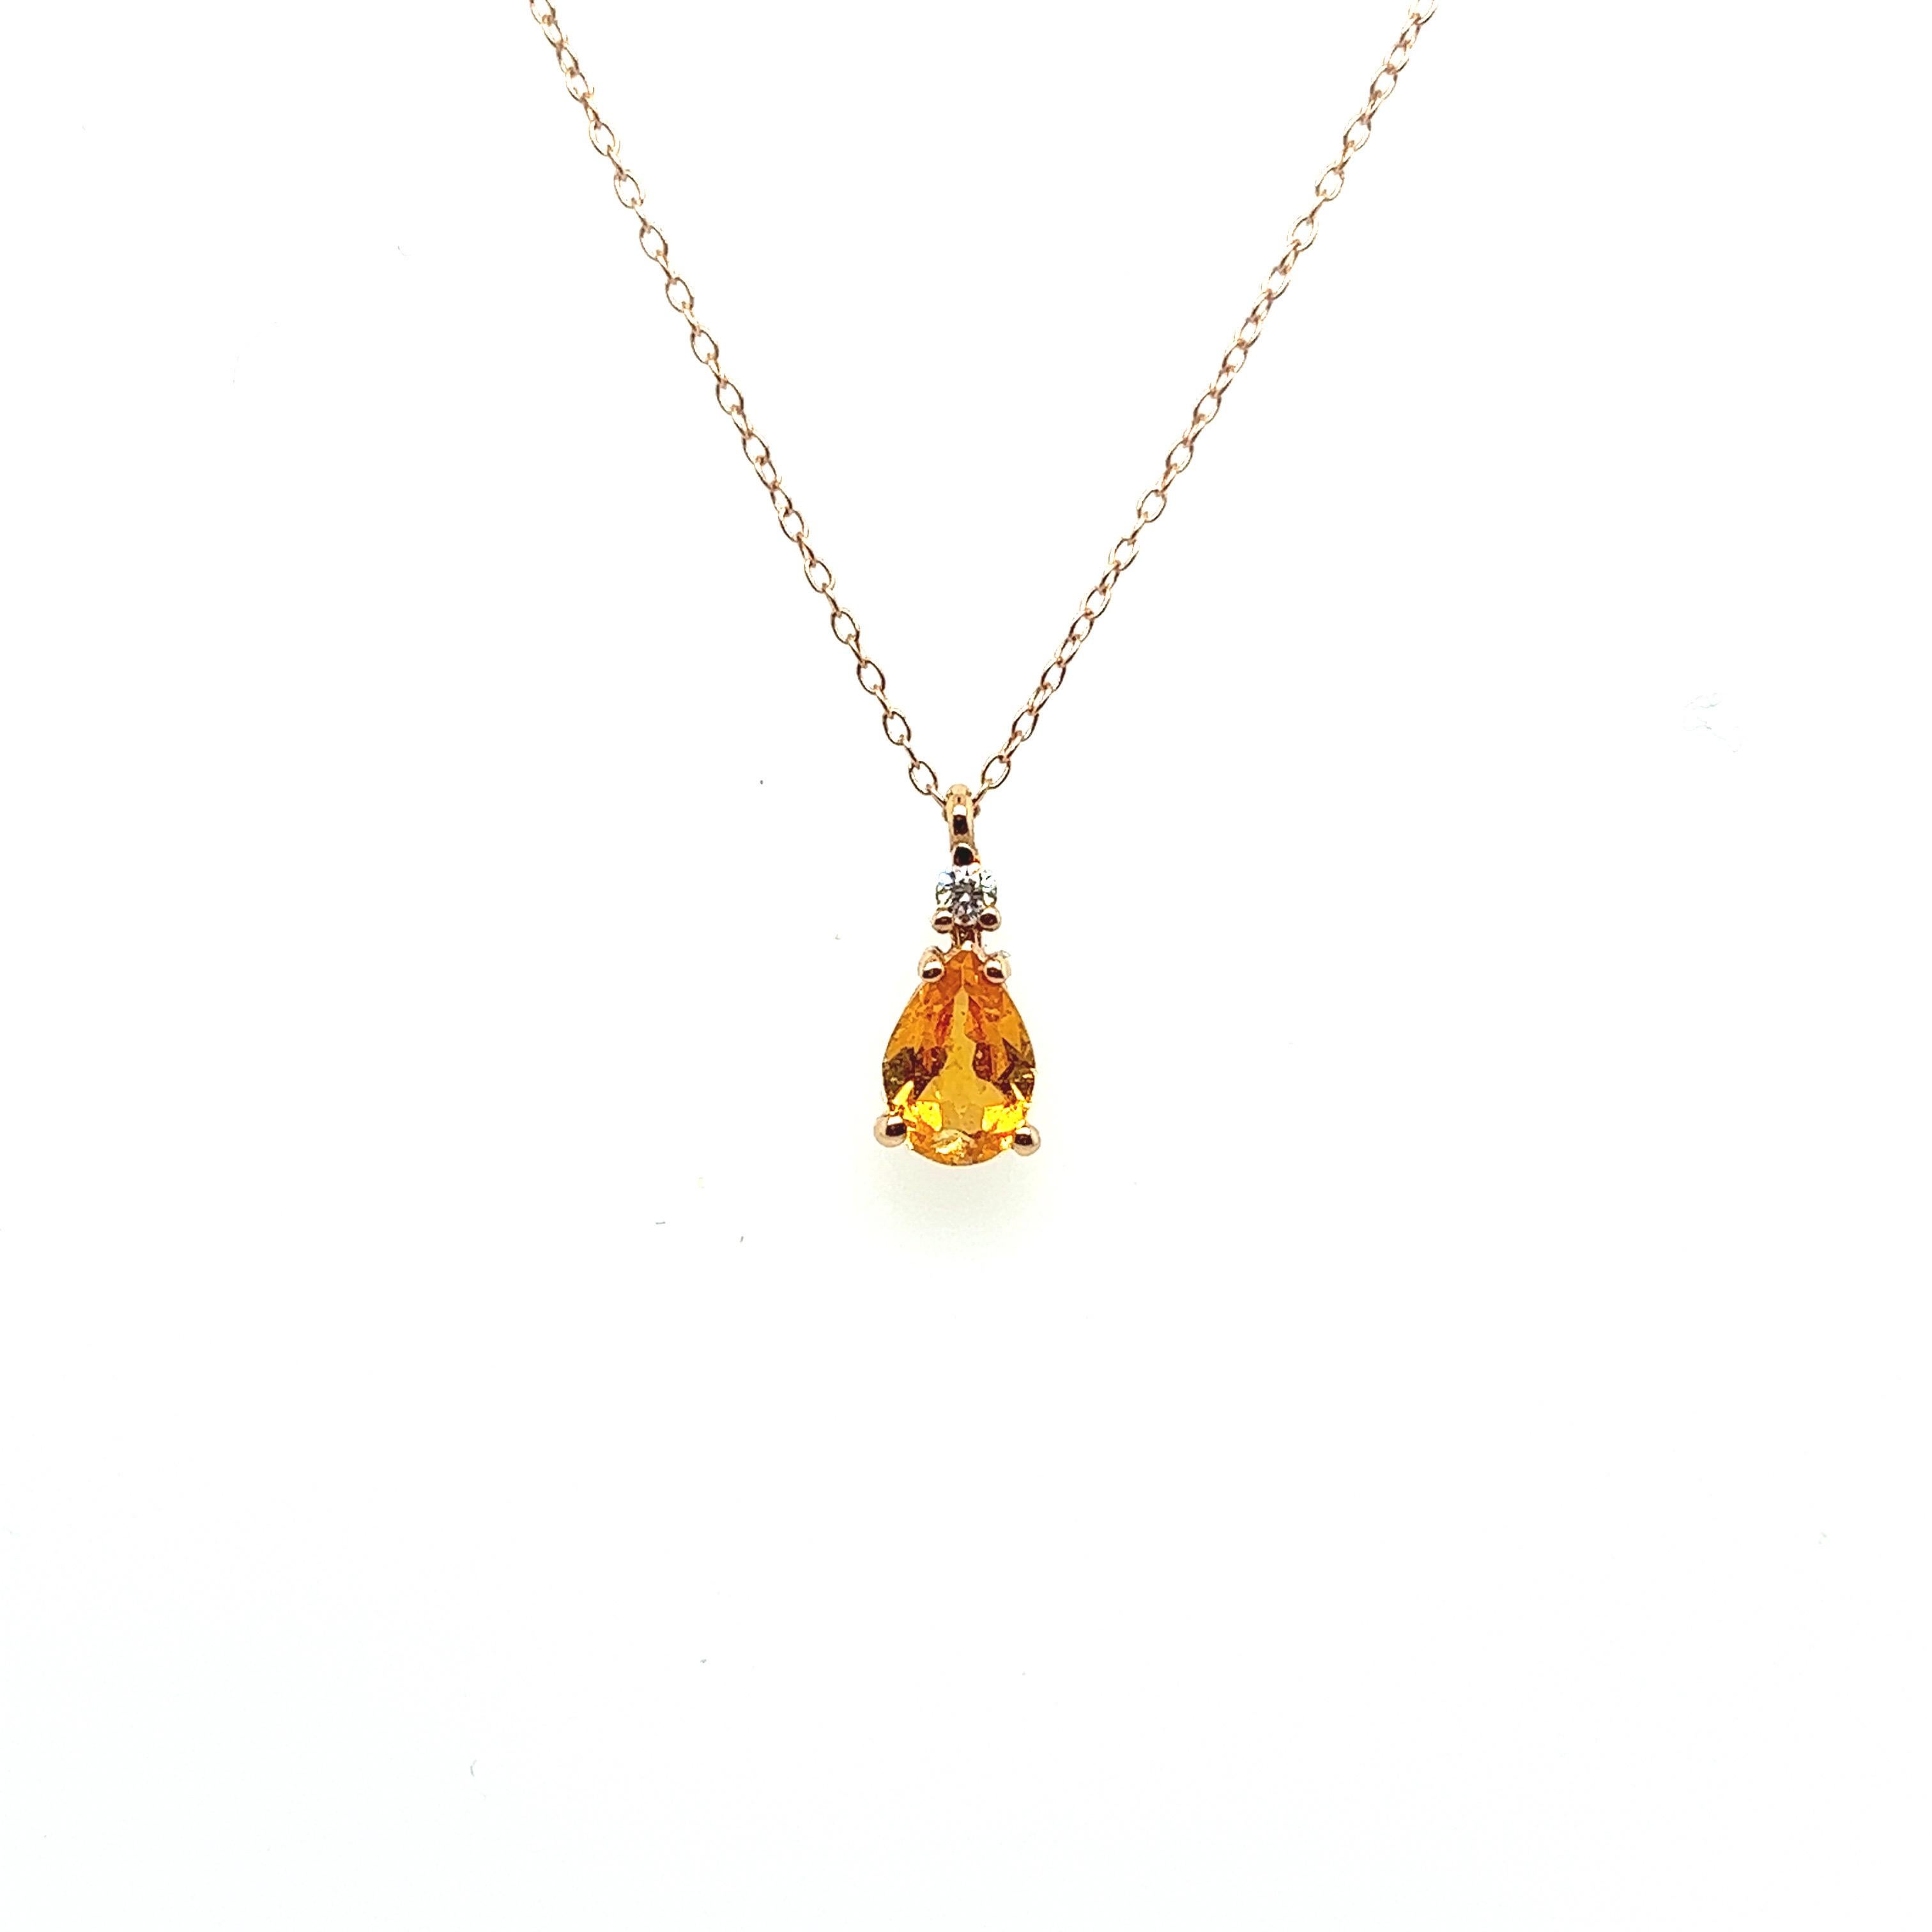 Collier pendentif grenat mandarin diamant or rose 

Magnifique collier en or rose 18K surmonté d'une chaîne de 45 cm. Elle attirera le regard avec sa magnifique pierre mandarine grenat en forme de poire. La pierre est maintenue par 2 fois 2 griffes